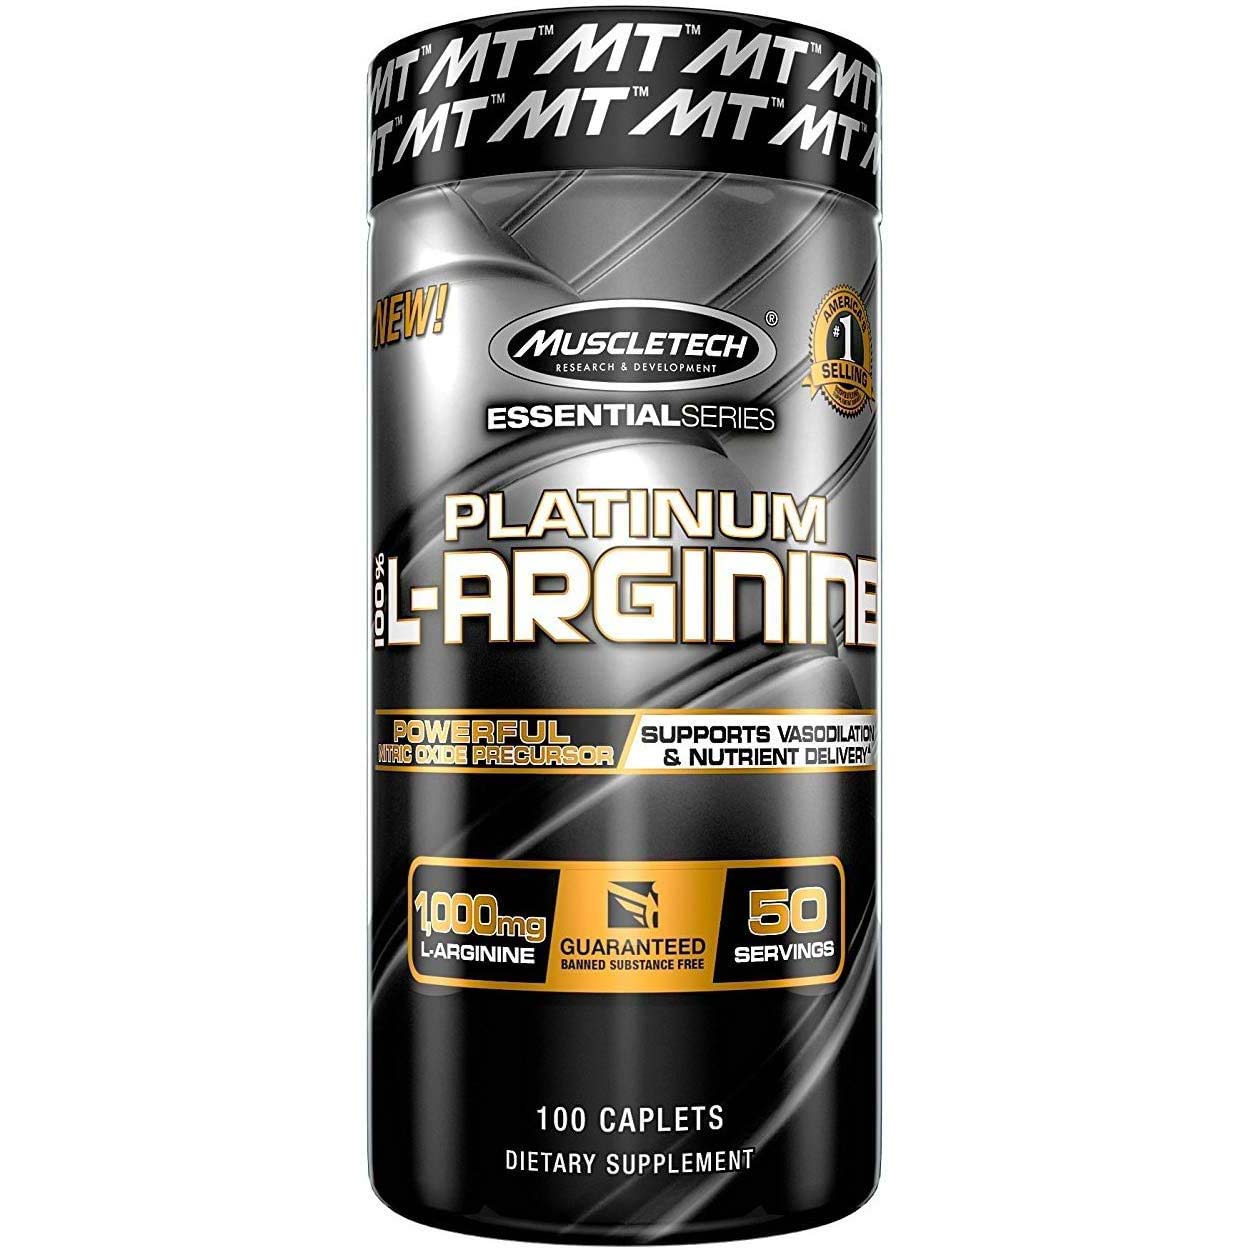 Muscletech Platinum L-arginine, 100 Caplets